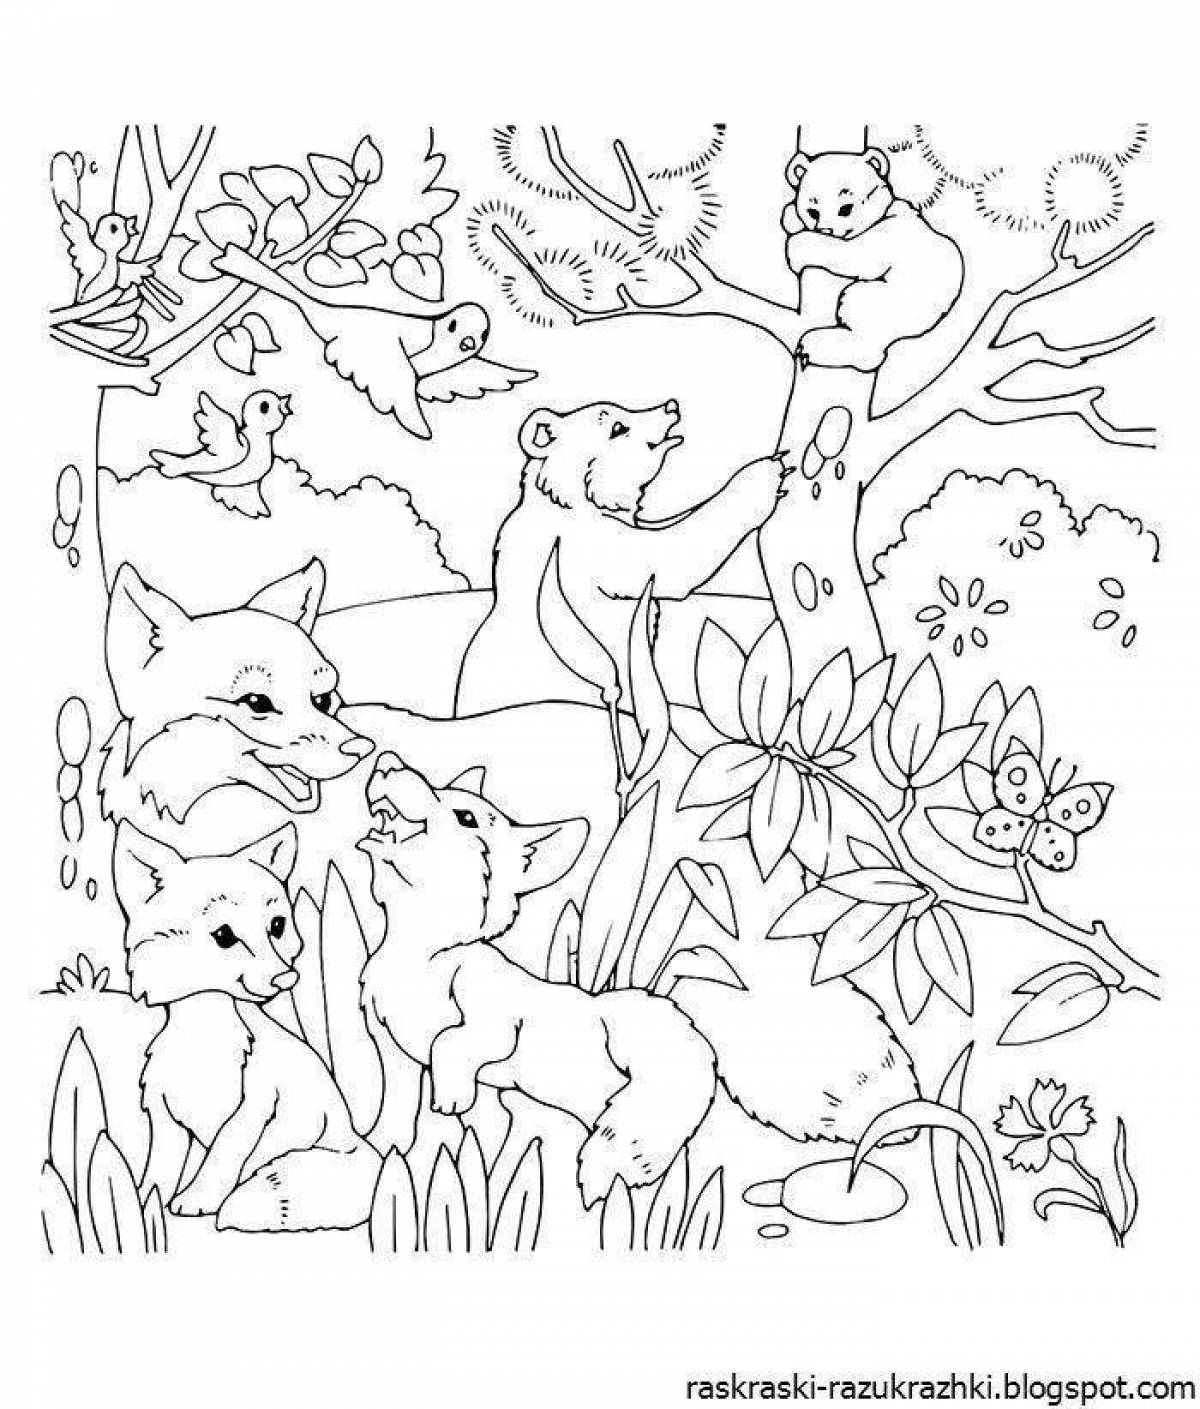 Великолепная страница раскраски лесных животных